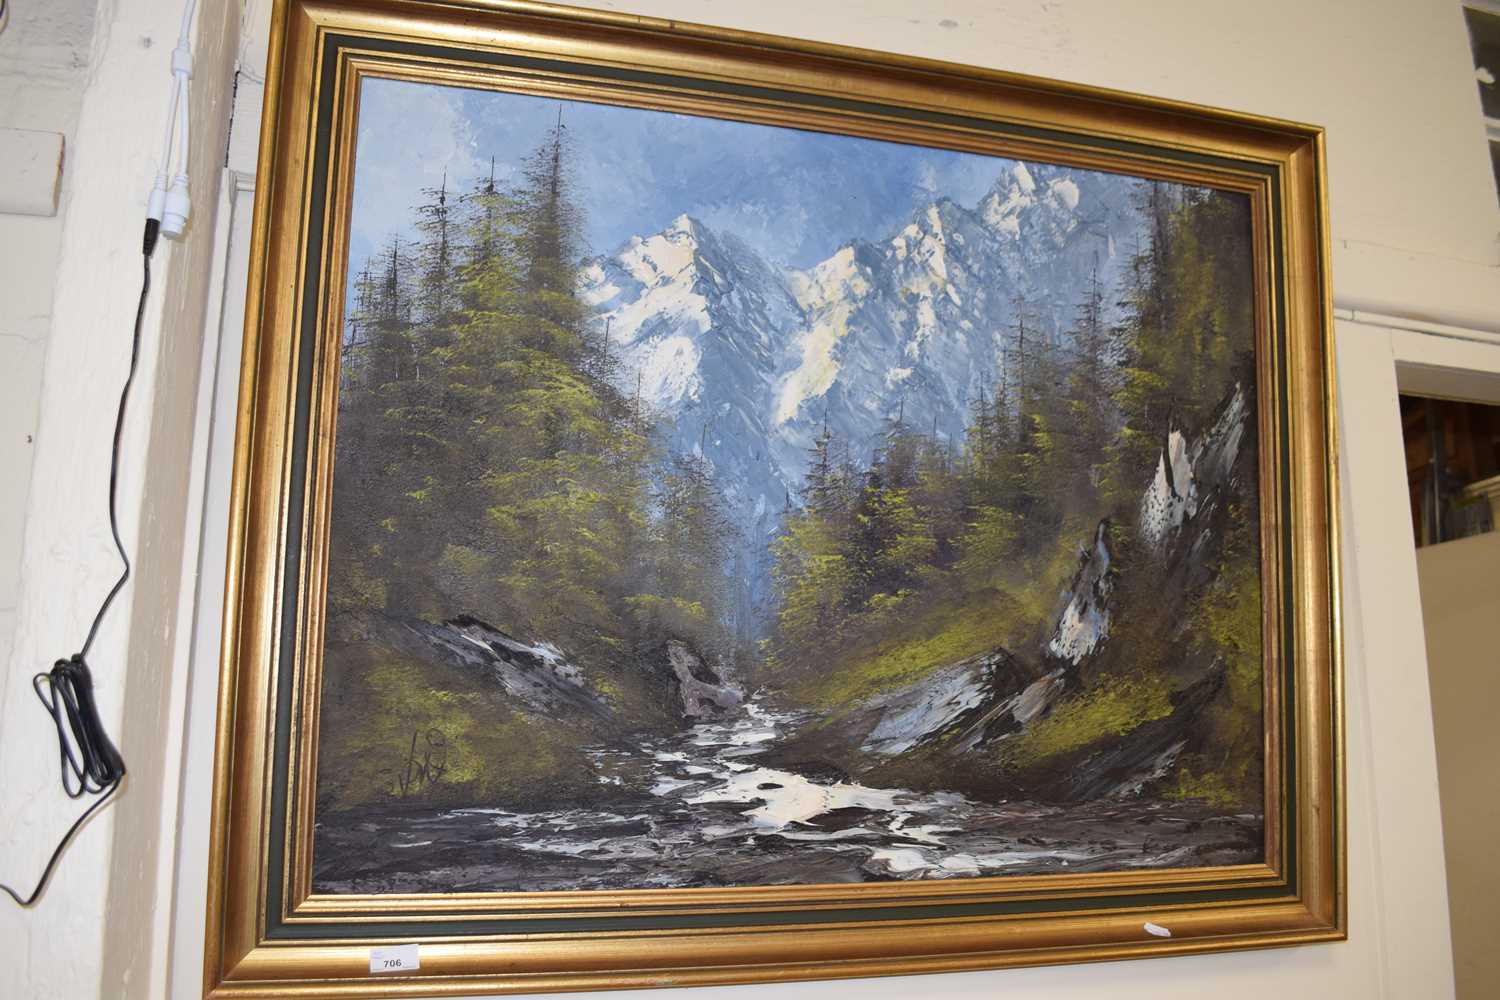 Alpine river scene, oil on canvas, framed